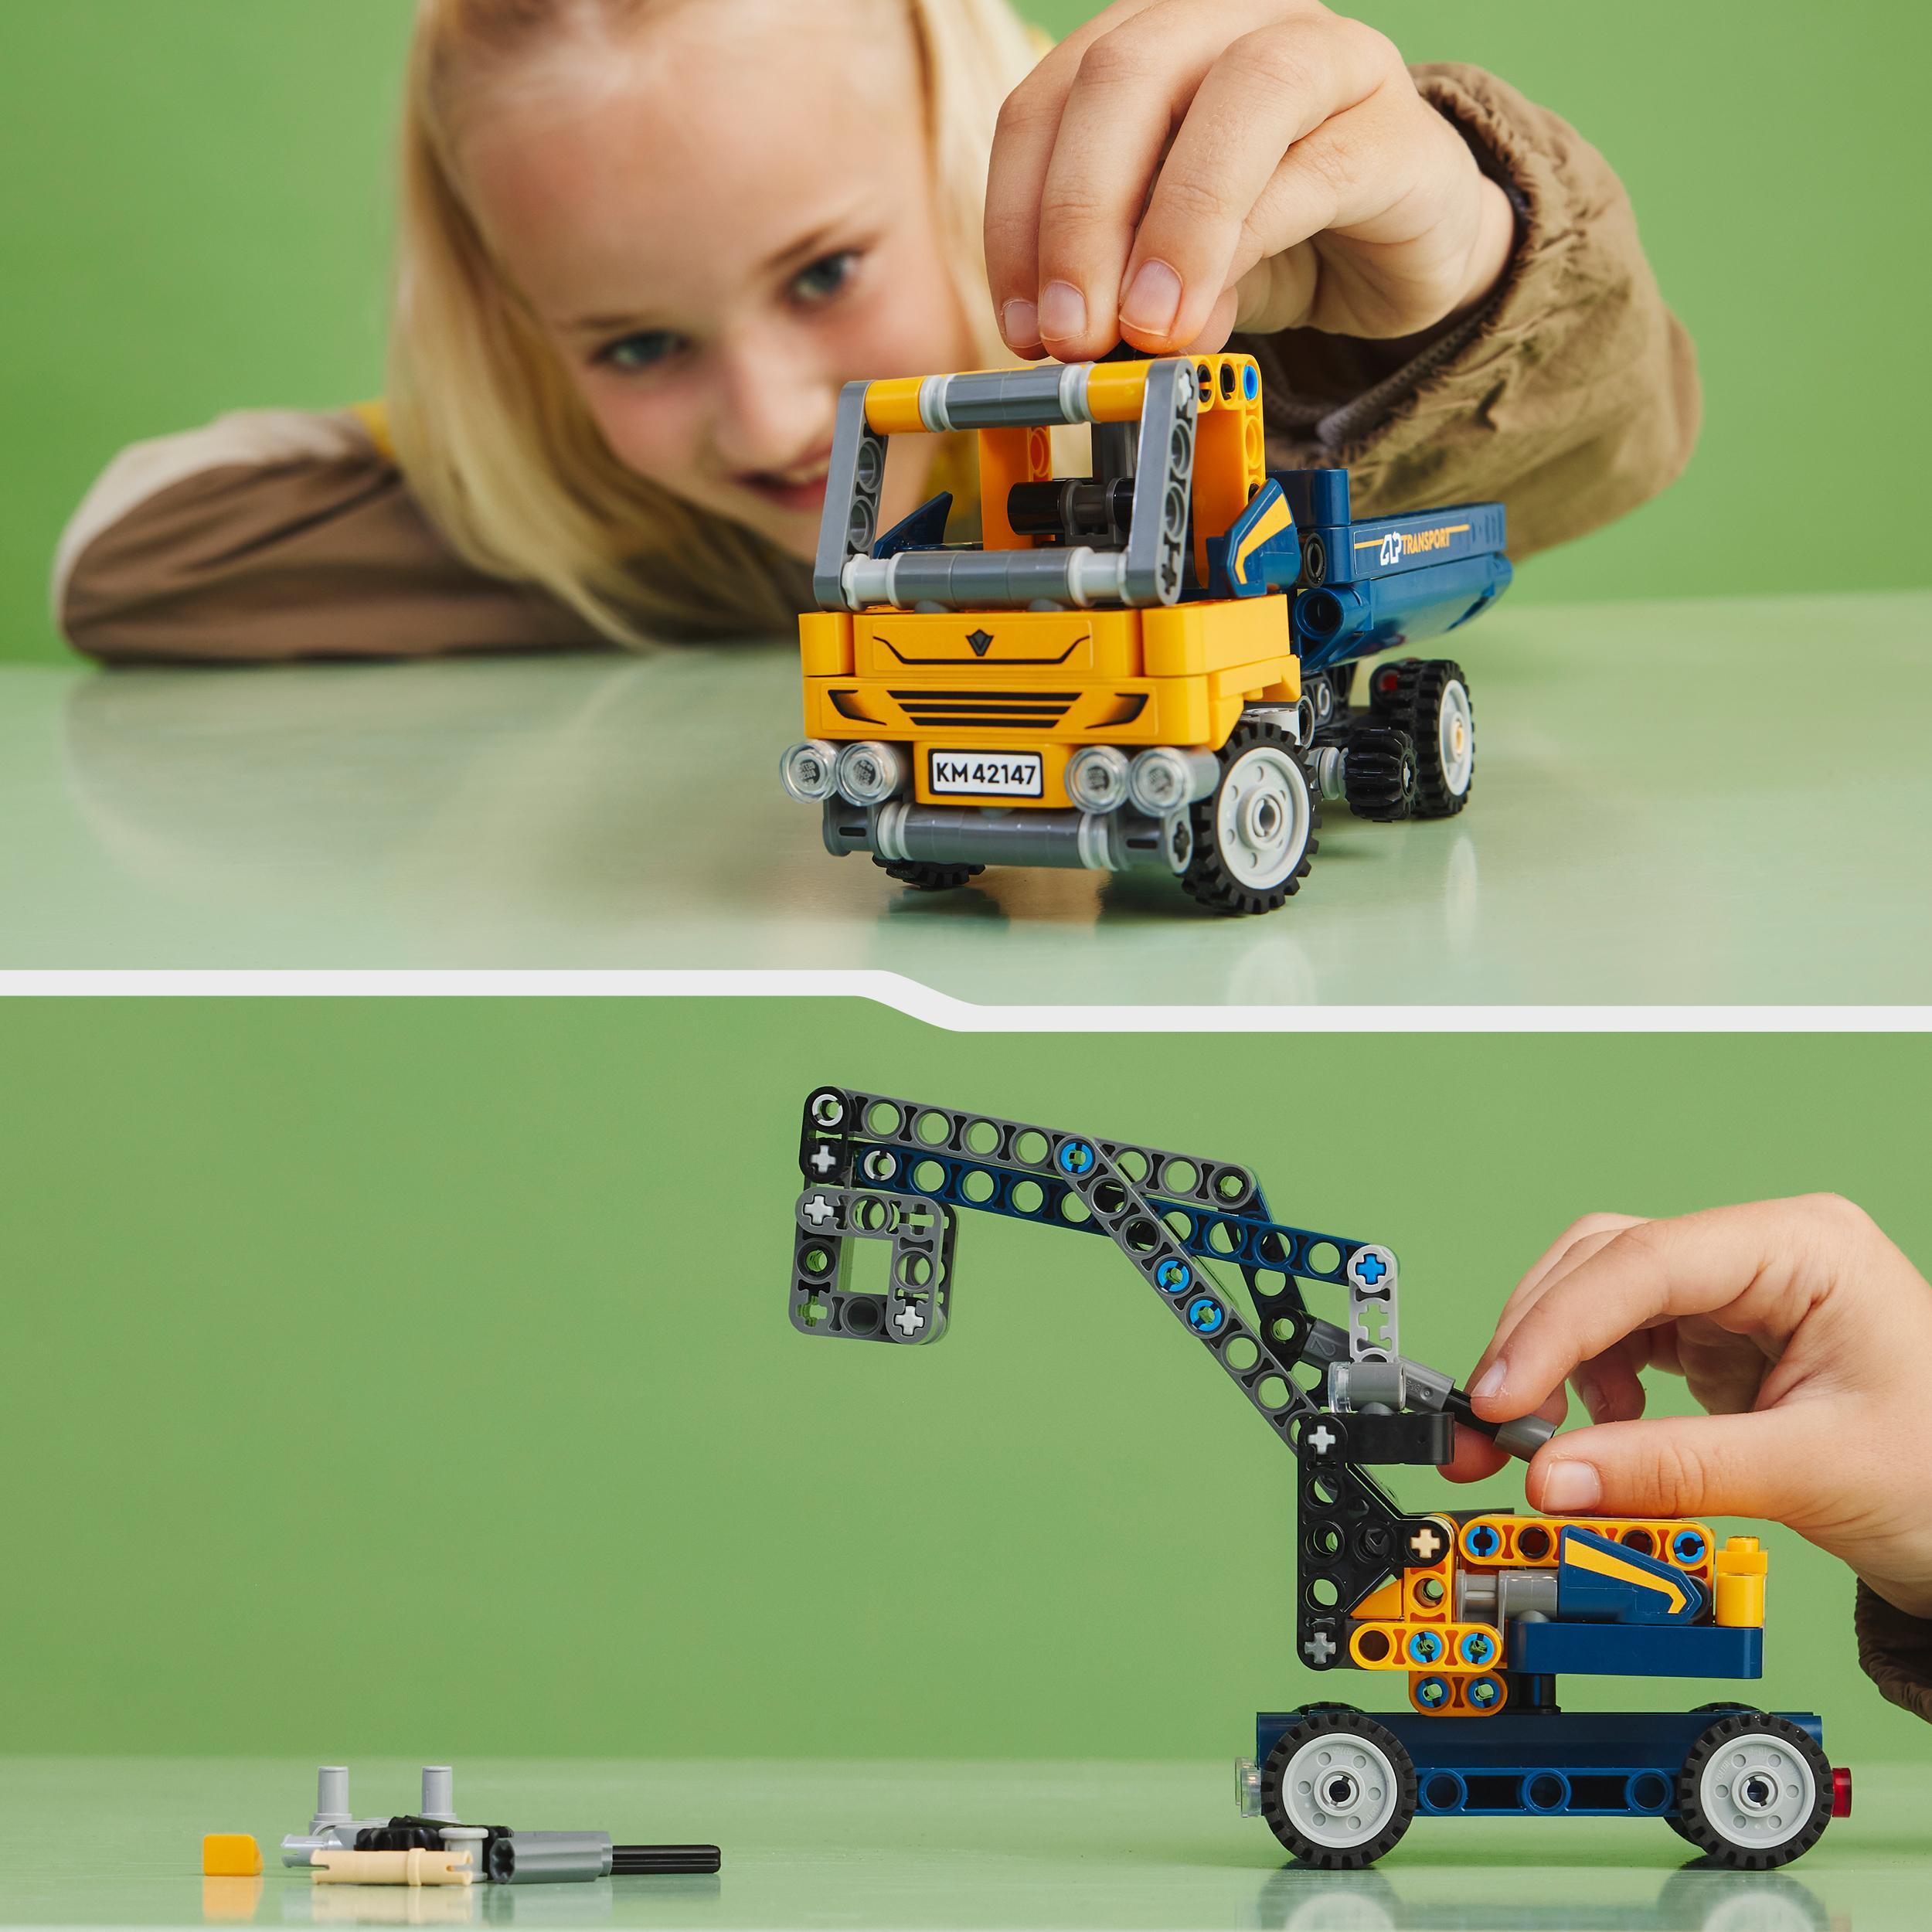 Lego technic 42147 camion ribaltabile, set 2 in 1 con camioncino